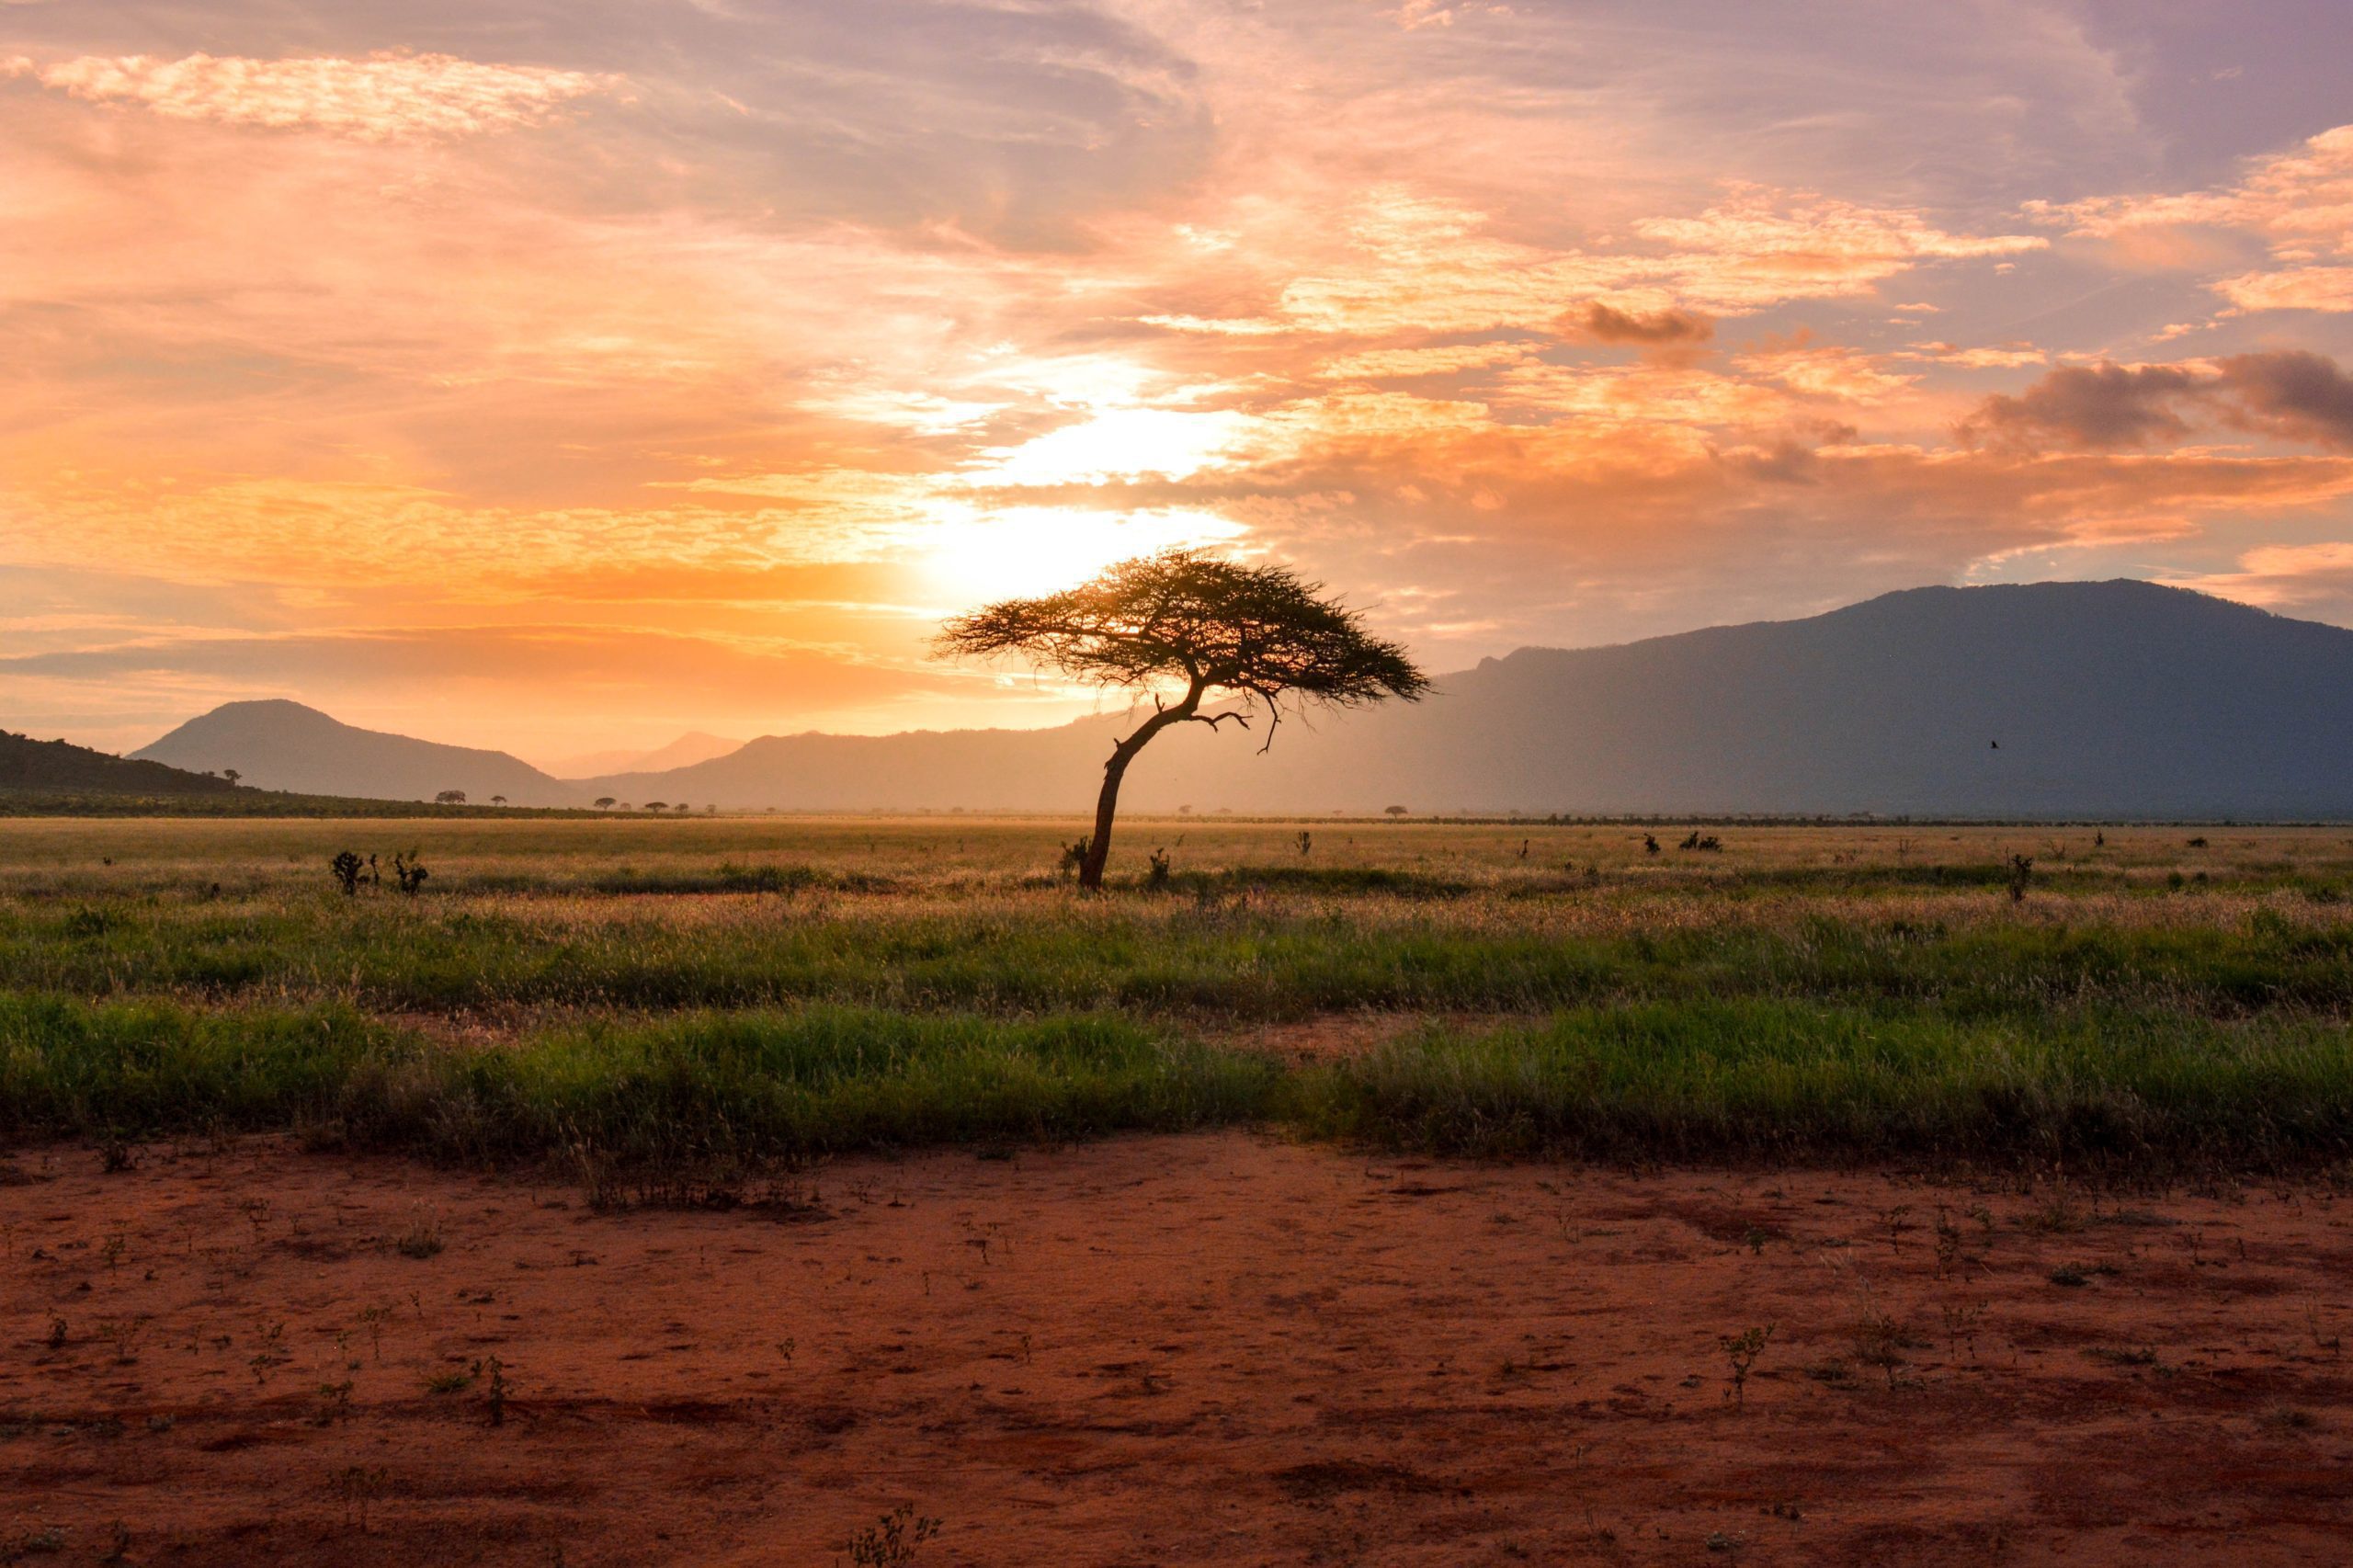 Kenya Luxury Safaris, Acacia Tree at Sunset as seen on Kenya Safari Tour